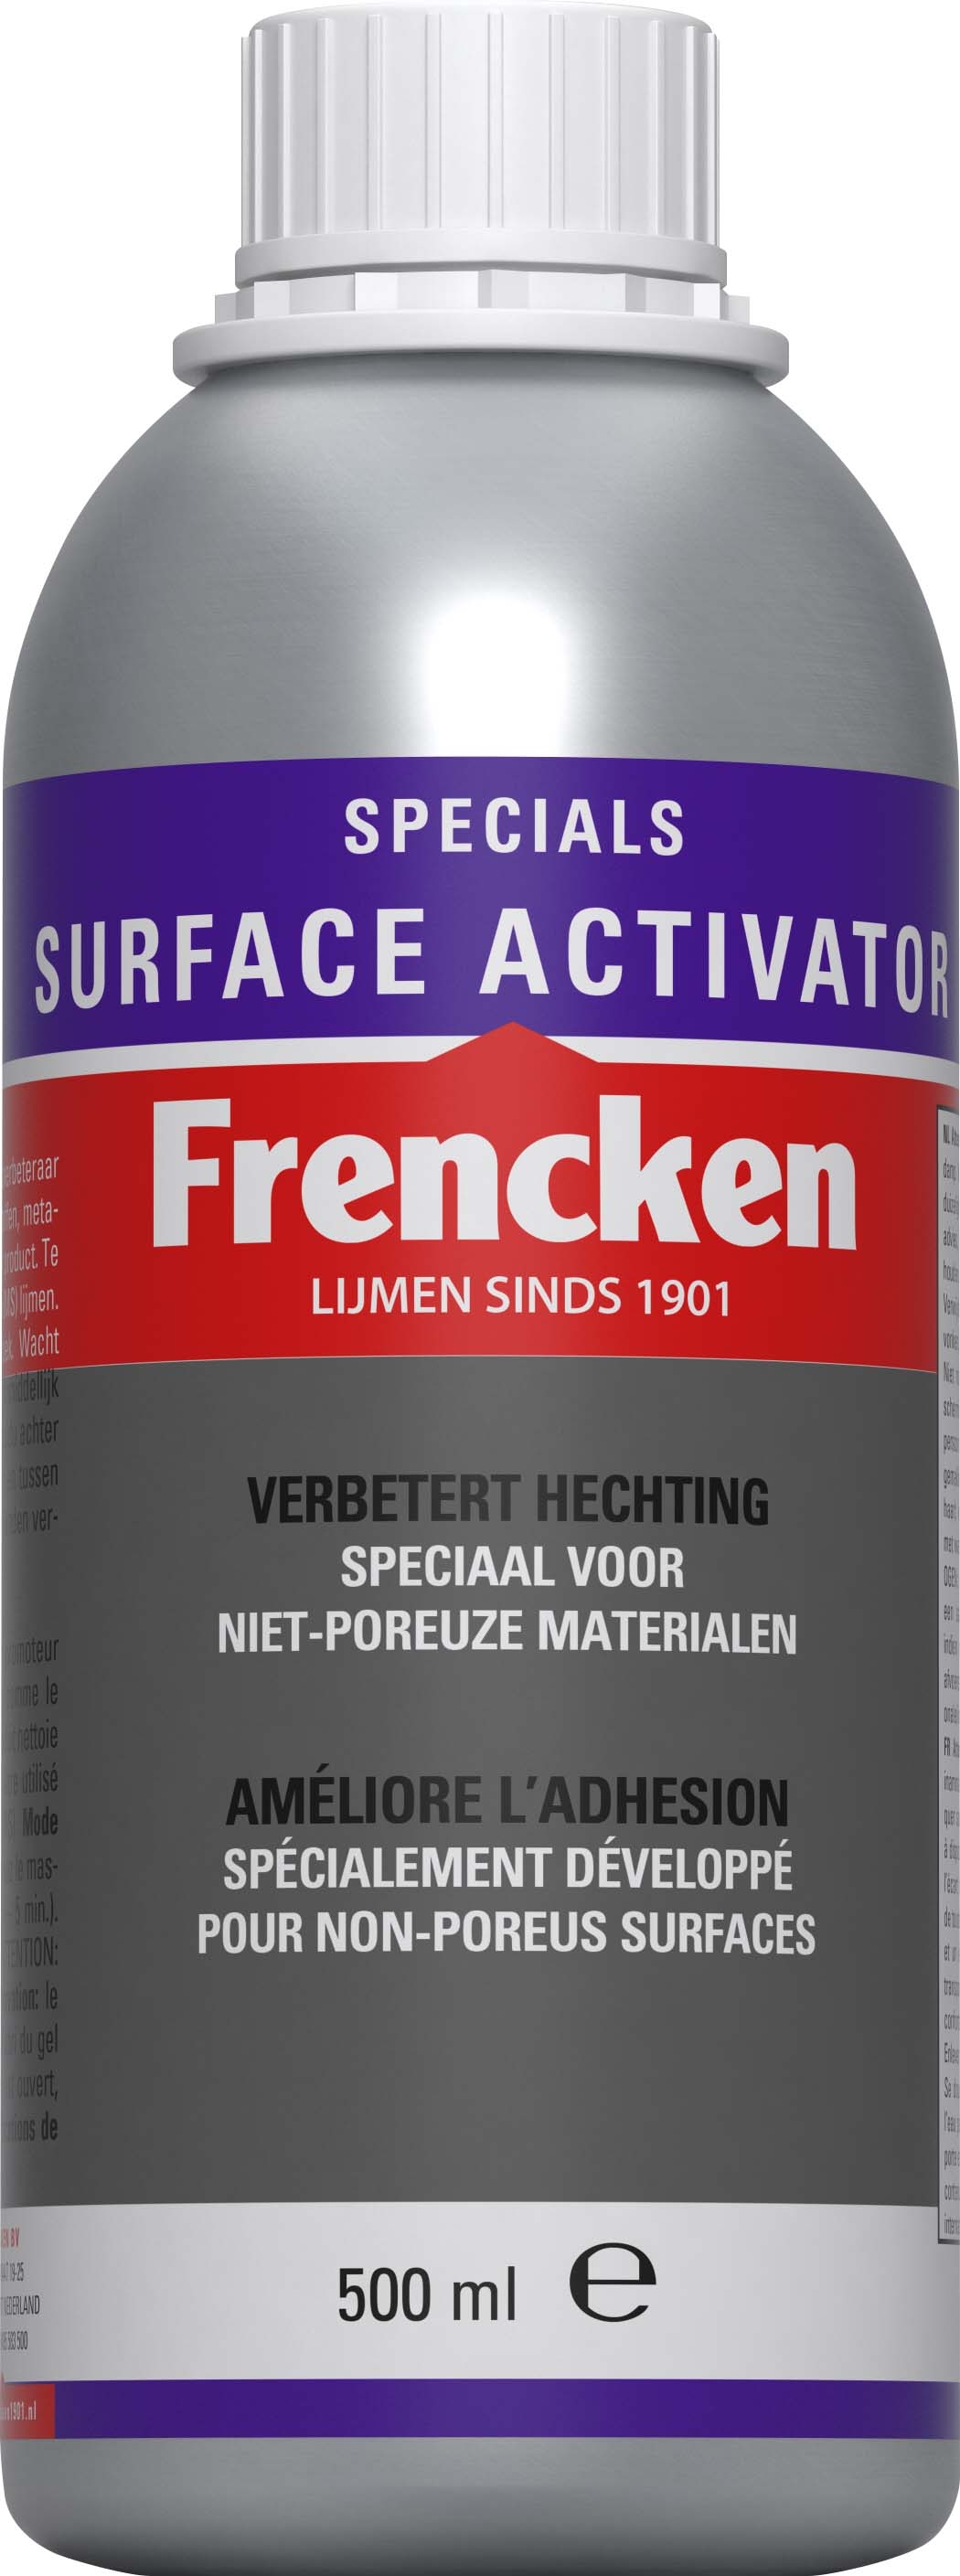 Frencken surface activator 